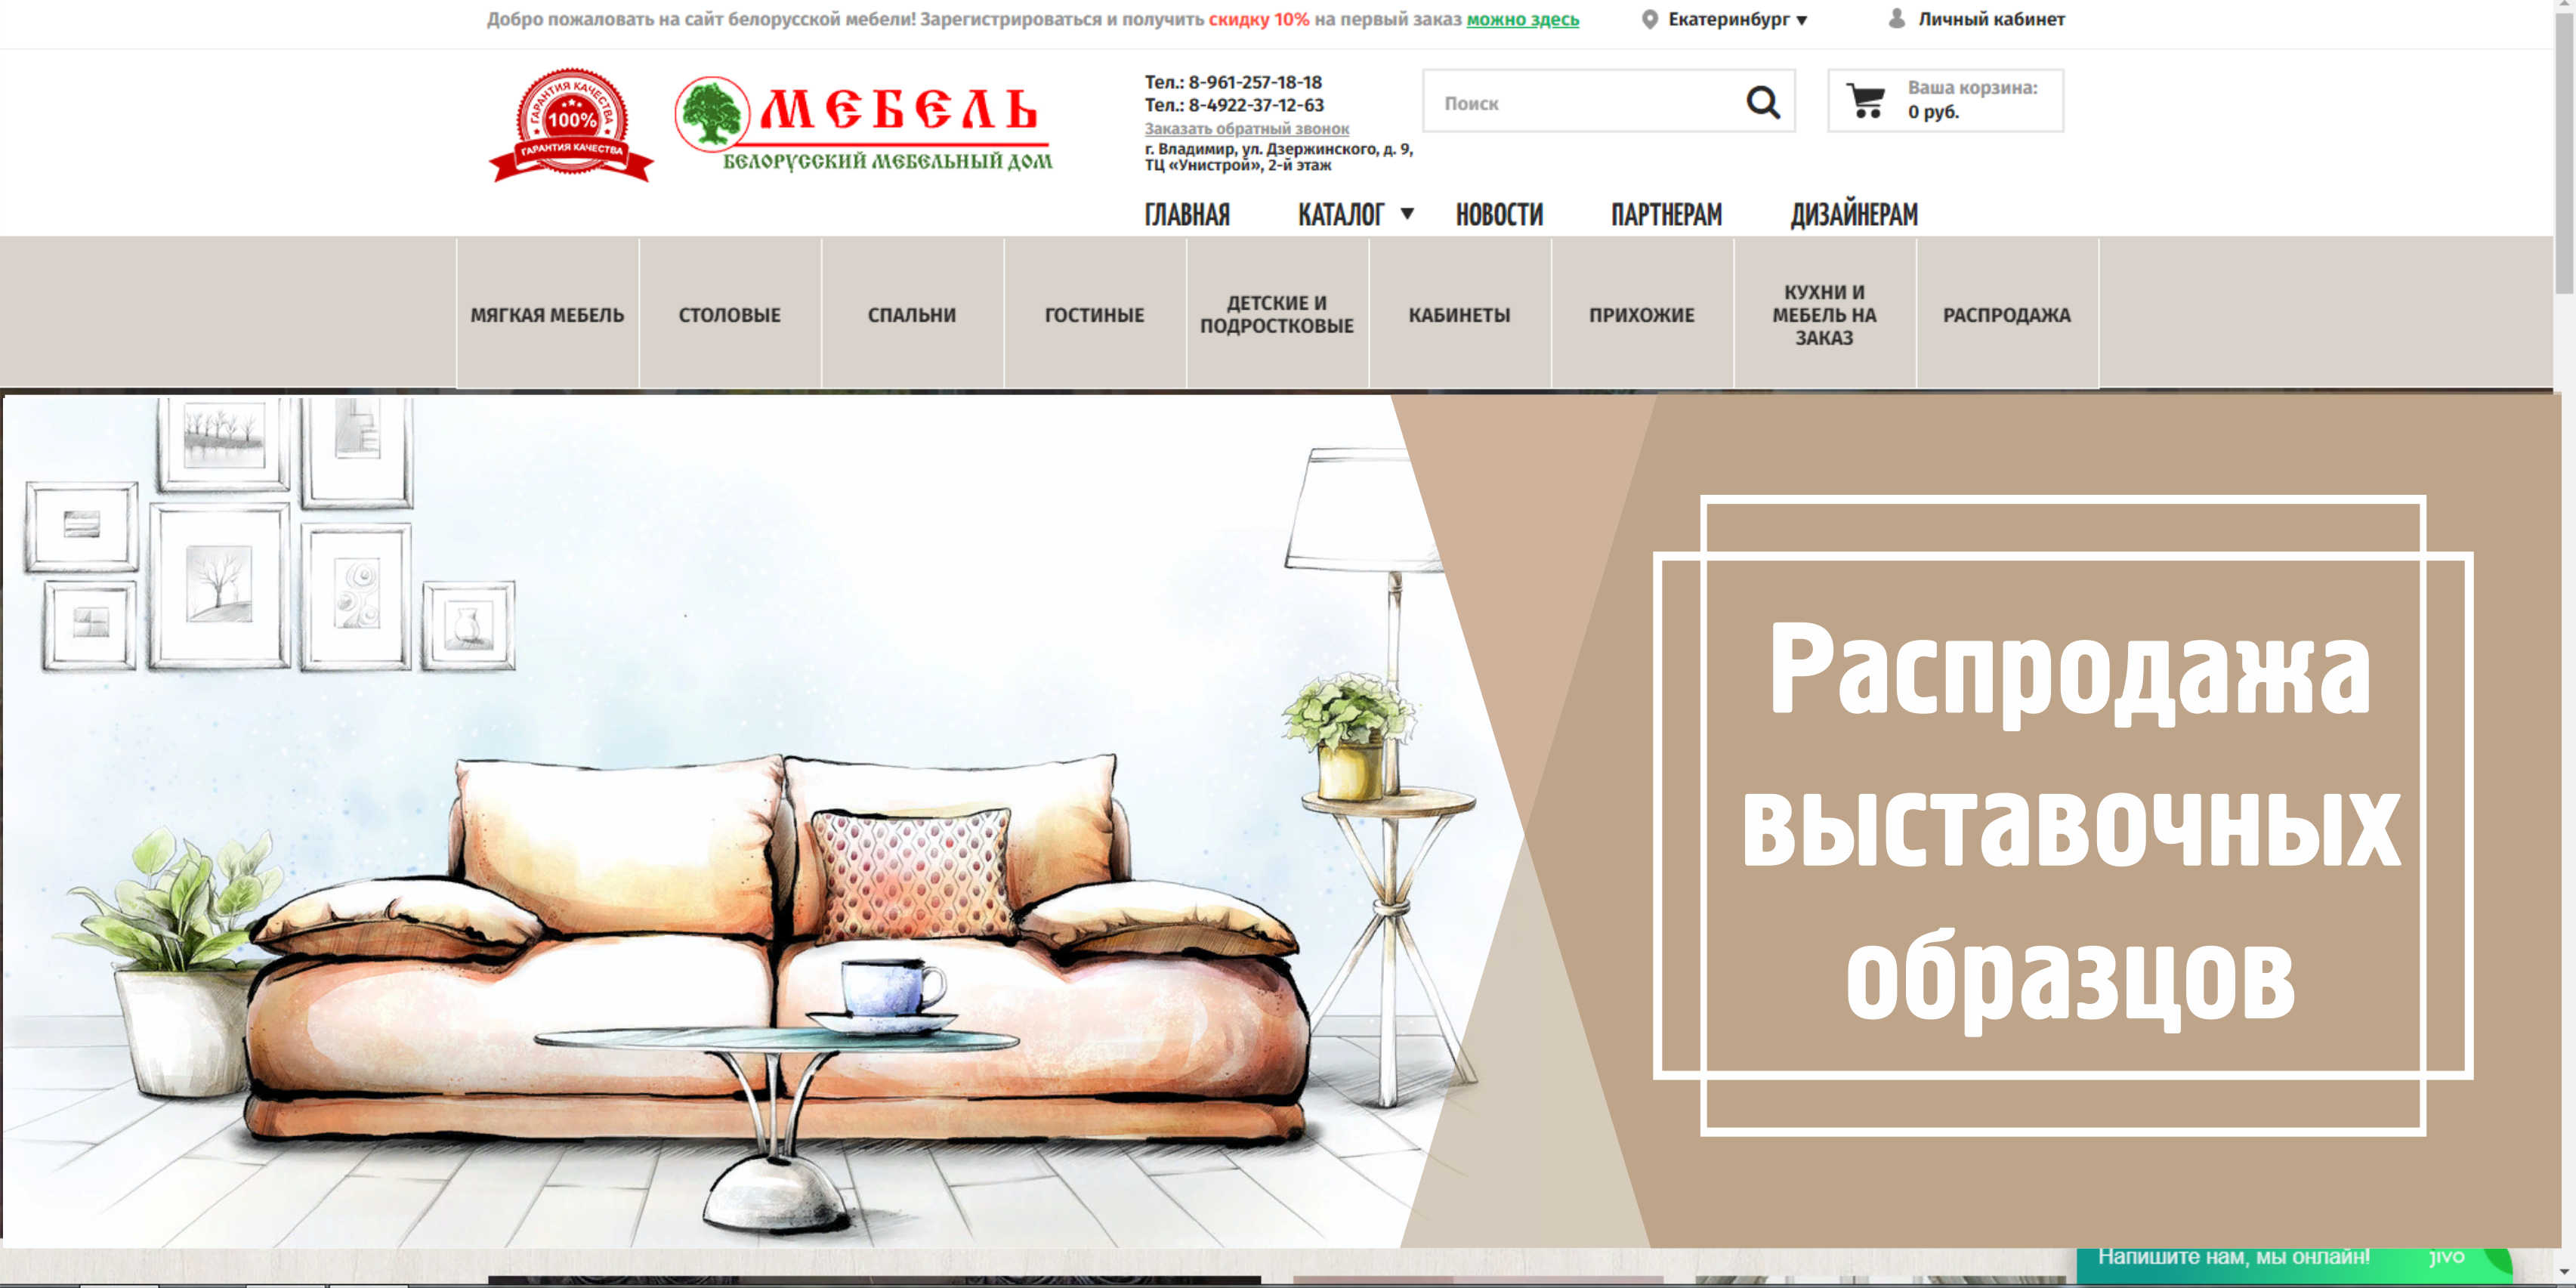 Ток мебель сайт. Дизайн сайта мебели. Обложка для сайта мебели. Белорусский дизайн. Мебельный сайт с моделями мебели.